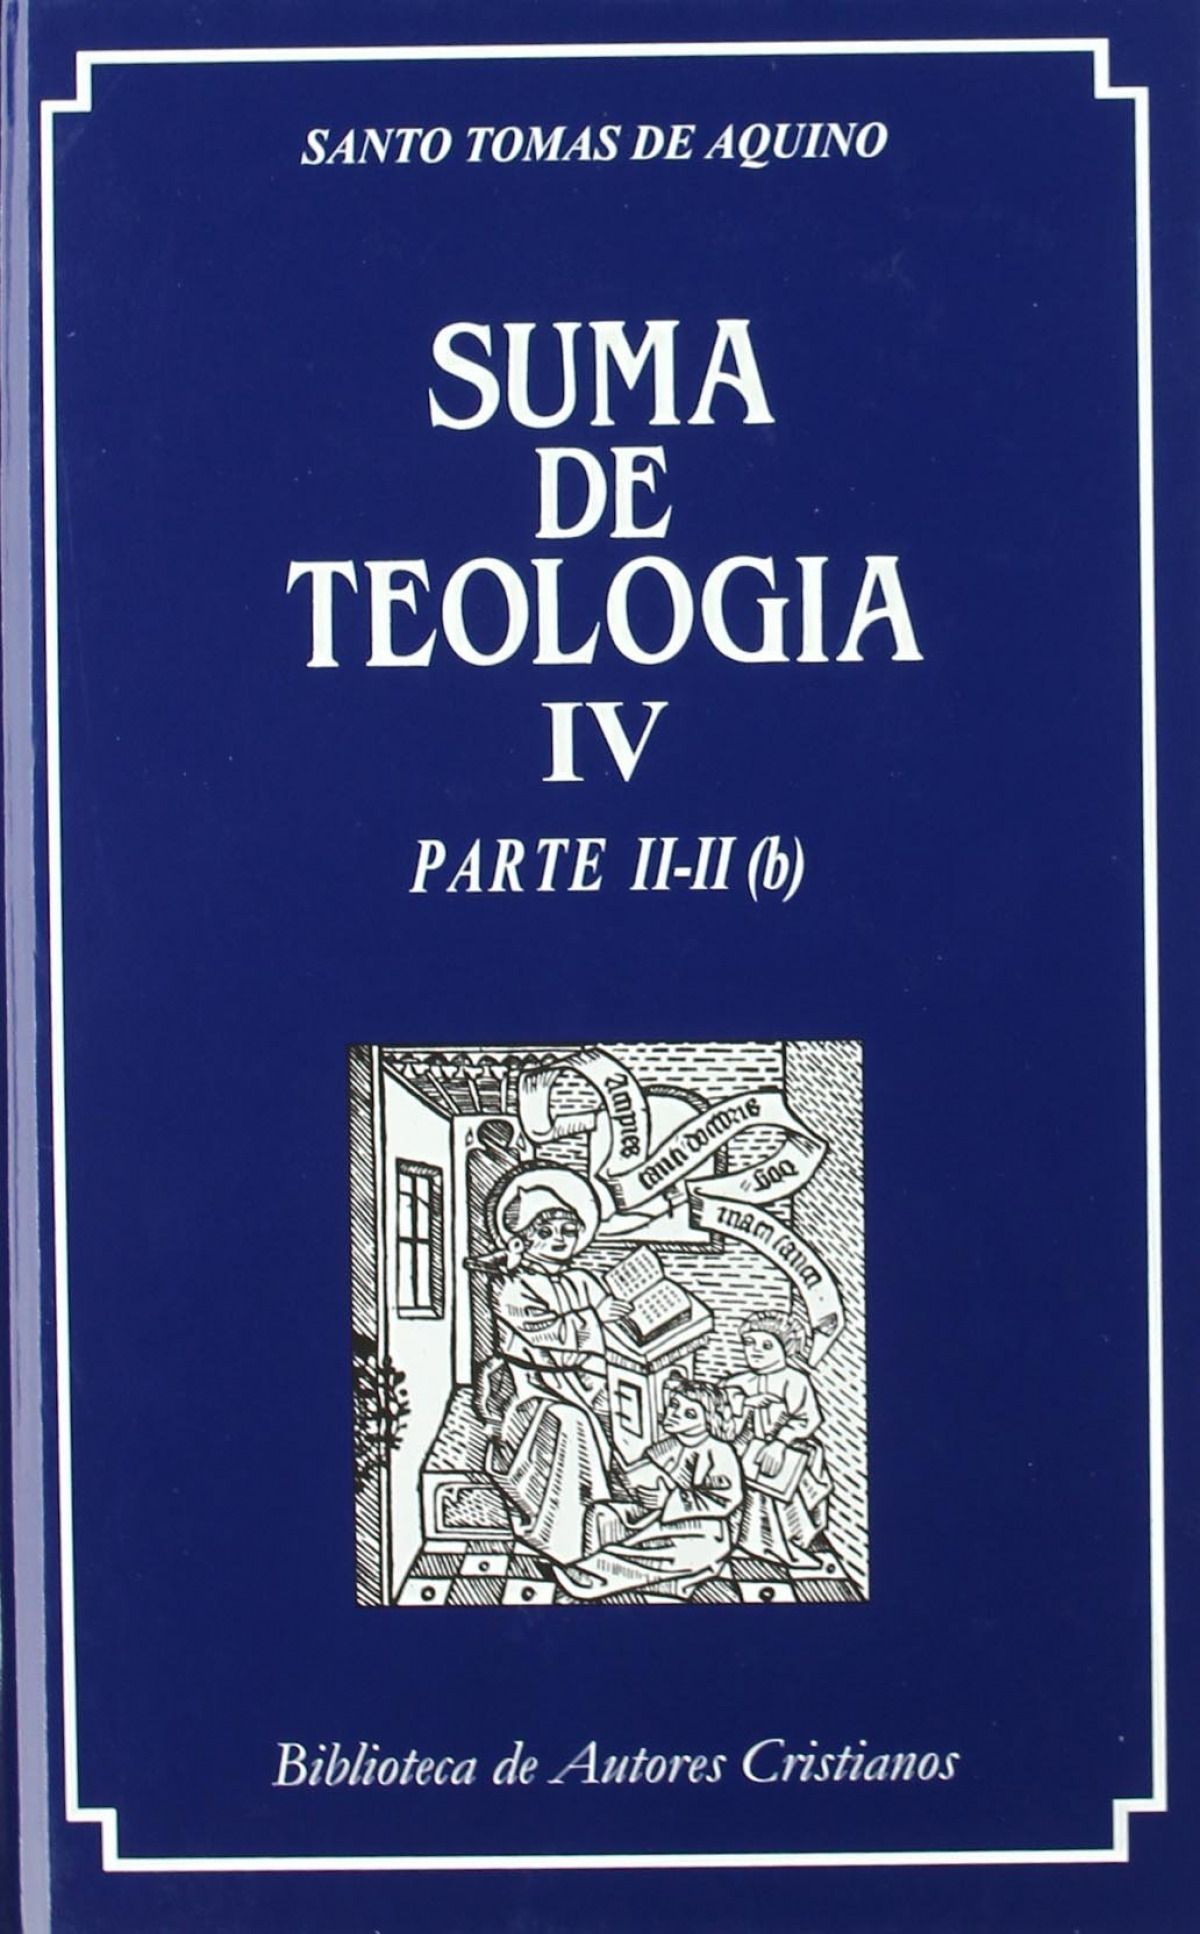 Suma de teología.IV.Parte II-II (b) - Santo Tomás de Aquino